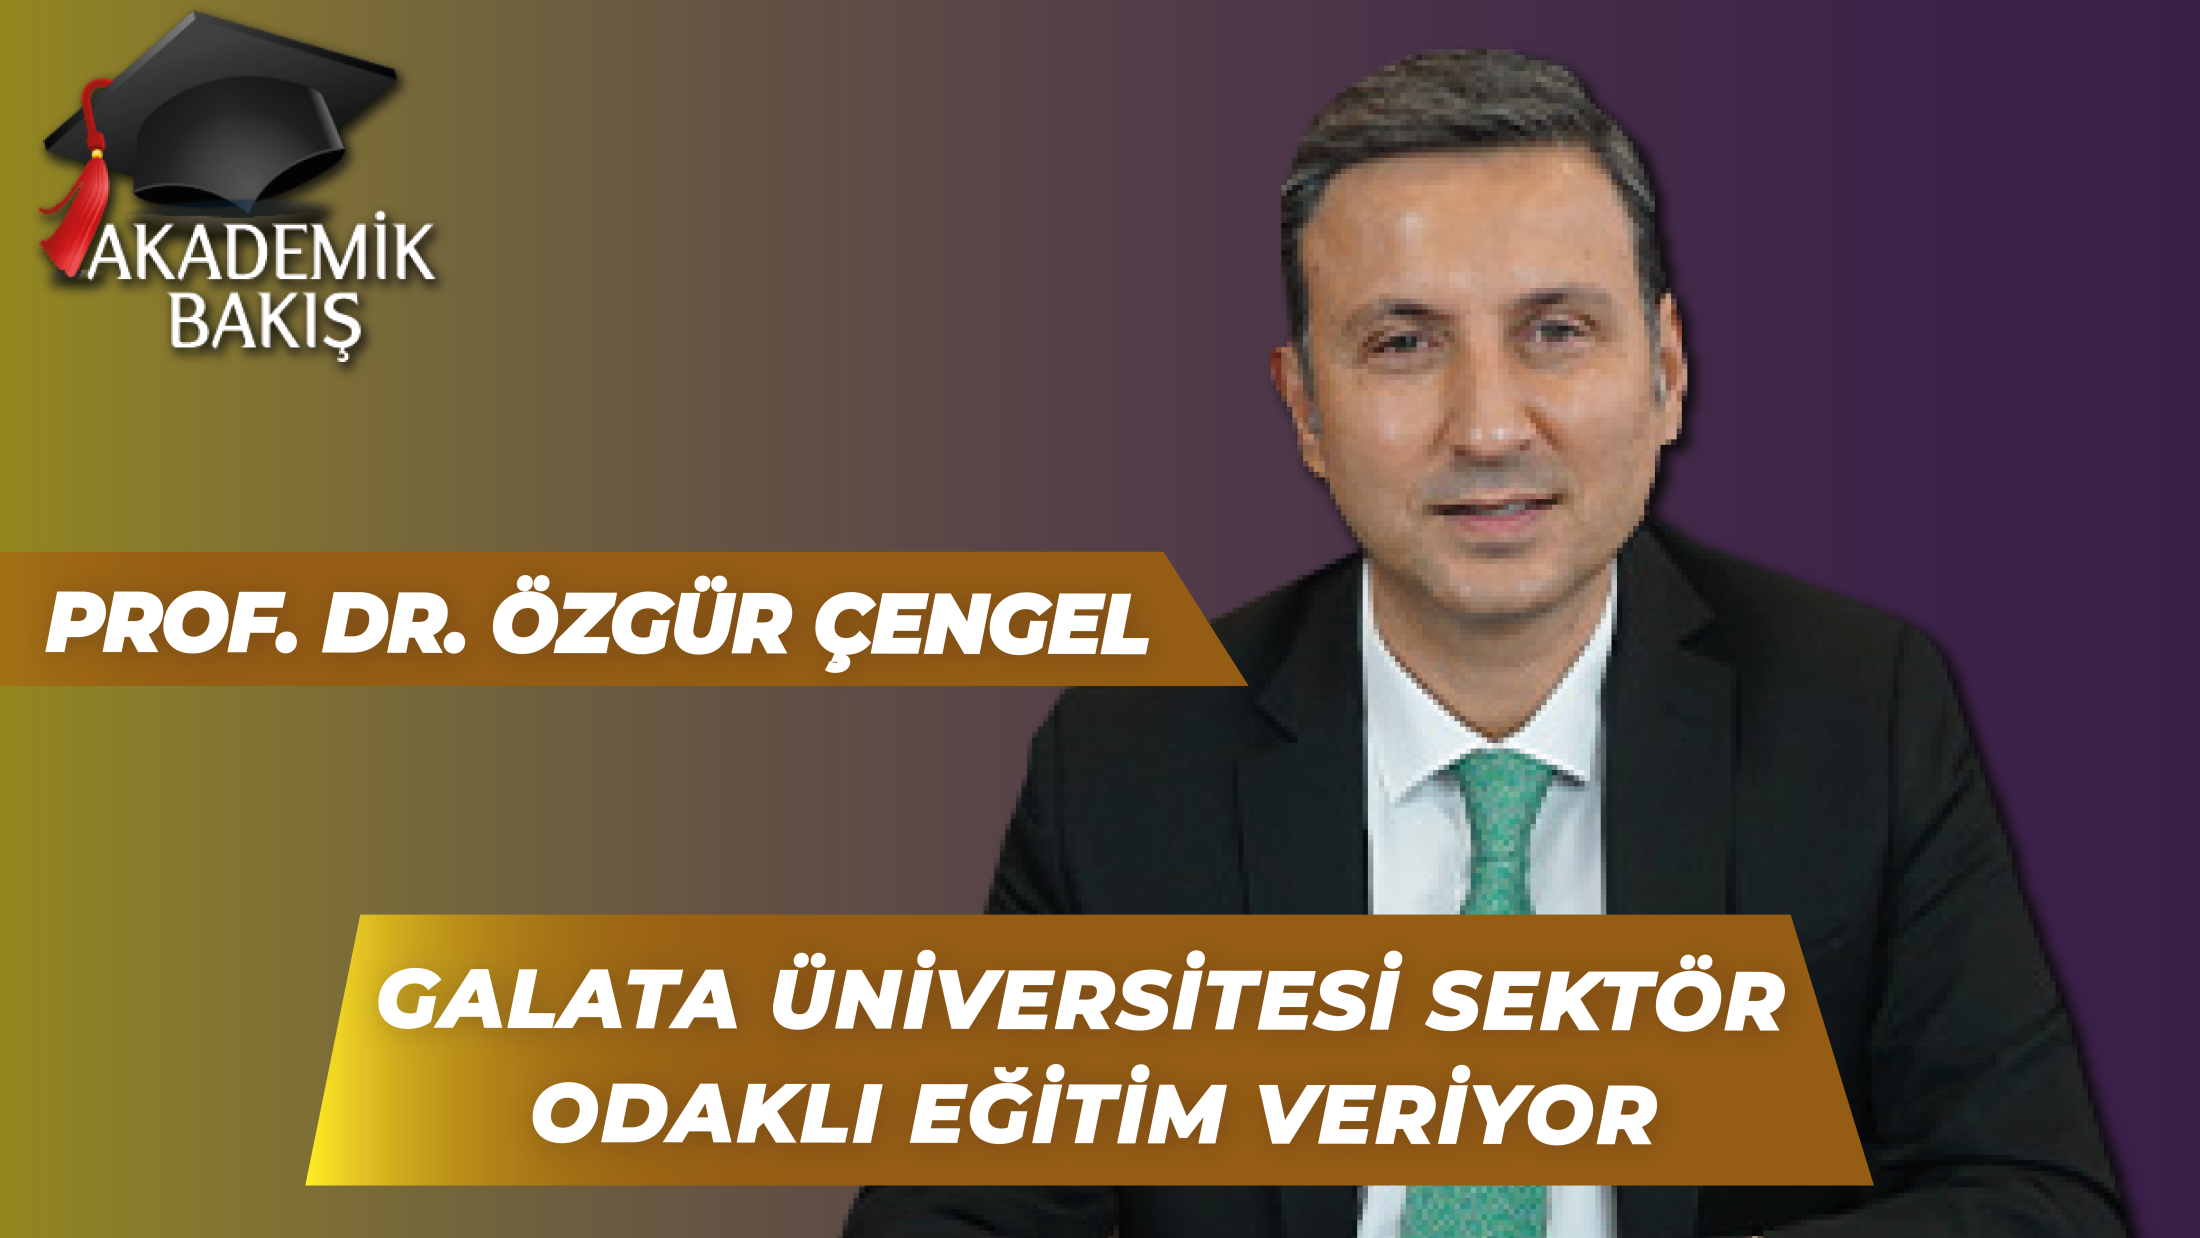 Prof. Dr. Özgür Çengel: Galata Üniversitesi “Kariyer Odaklı” Eğitim Hedefliyor